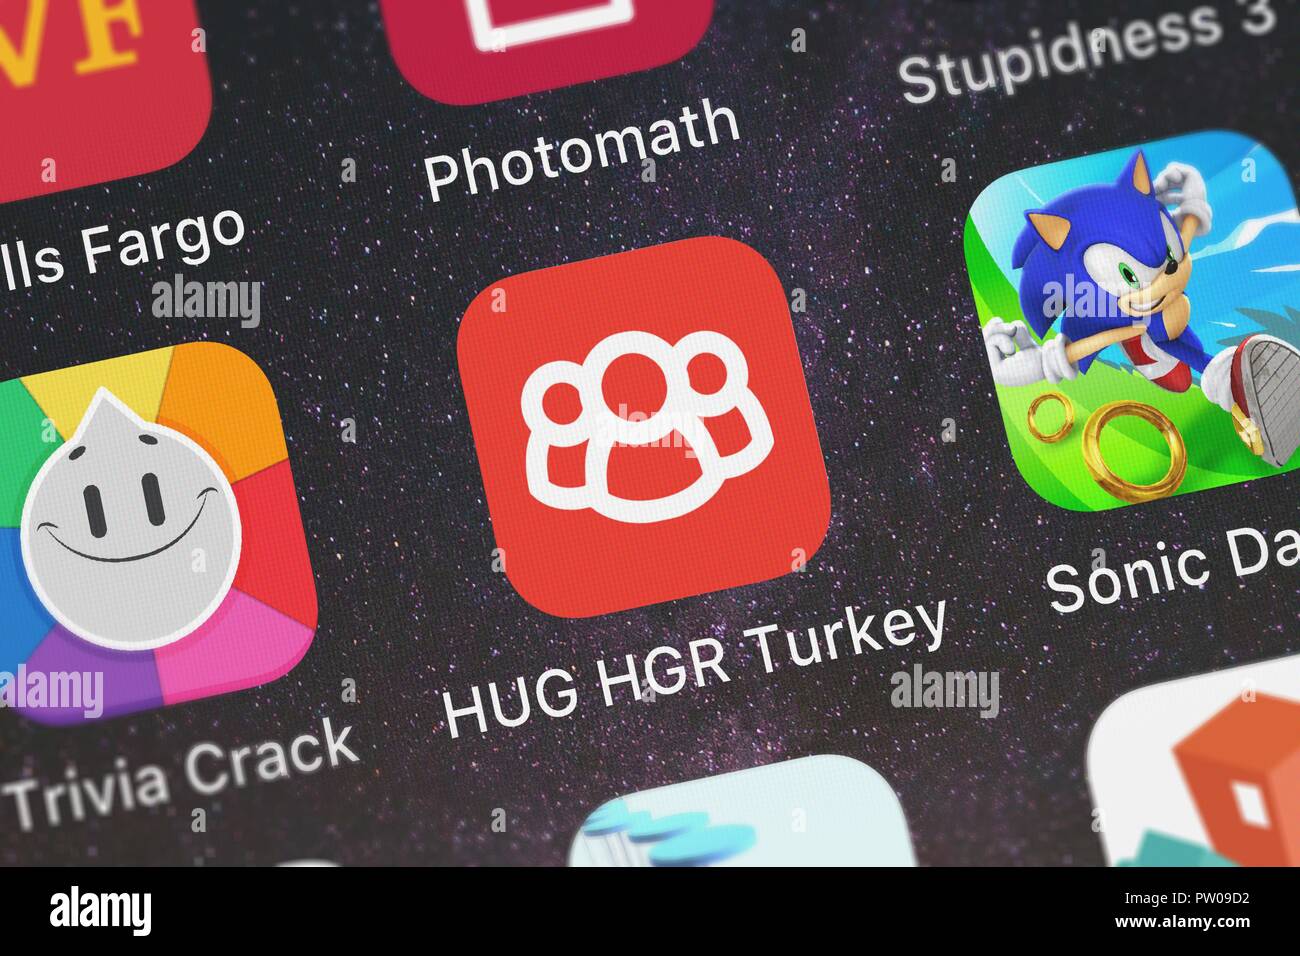 Londres, Royaume-Uni - 11 octobre 2018 : l'icône de HUG HGR Turquie Honeywell International, Inc. sur un iPhone. Banque D'Images